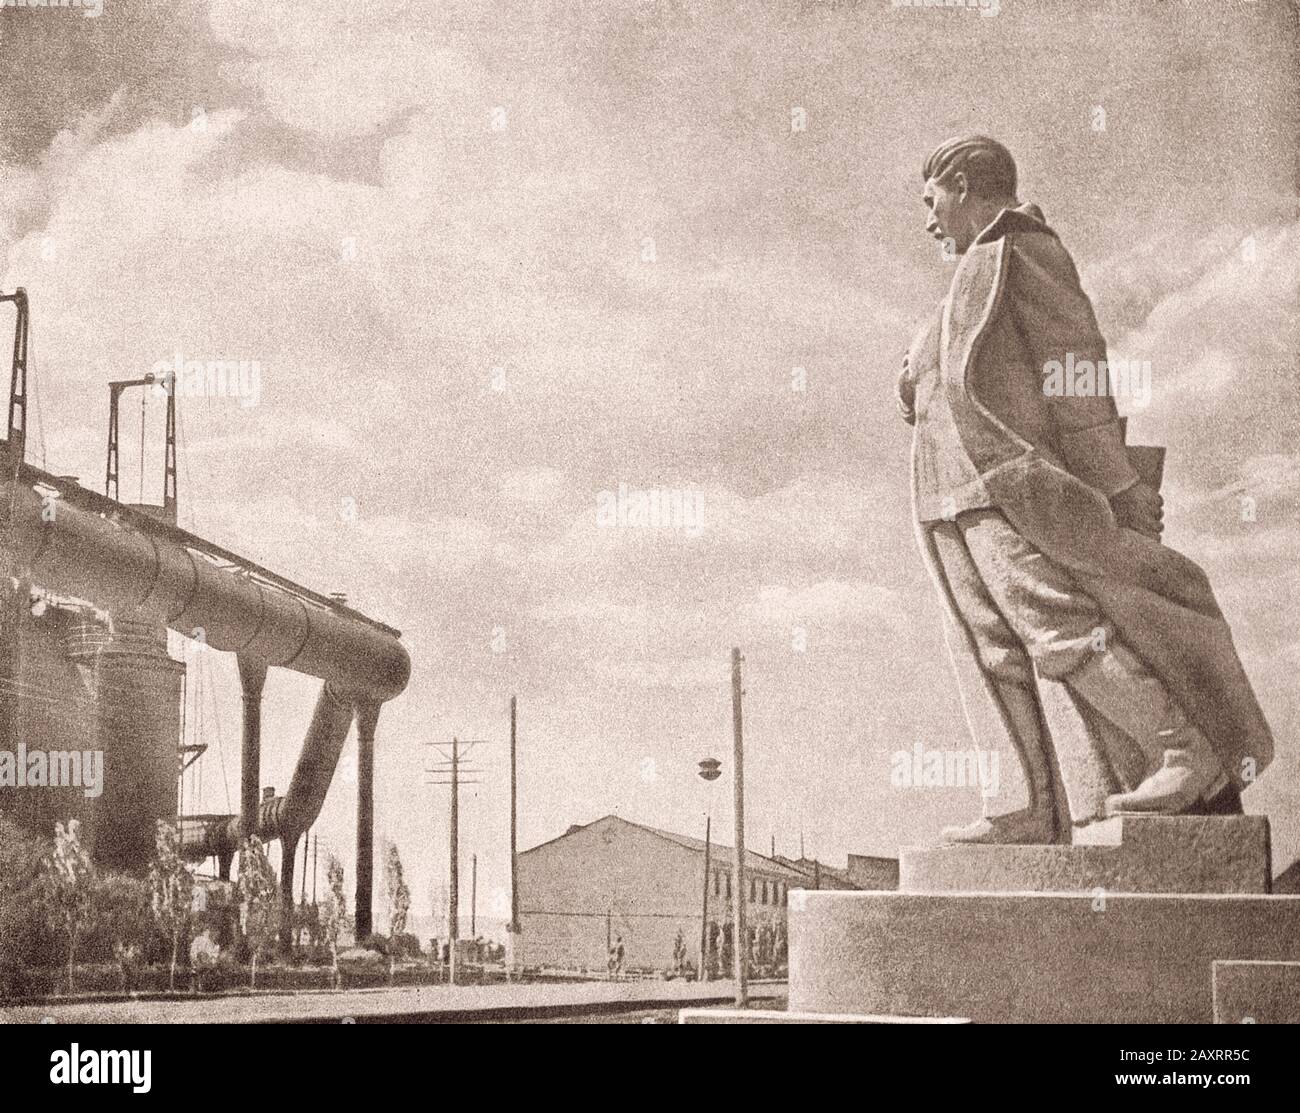 Esercito Rosso. Dal libro di propaganda sovietico del 1937. Monumento a Stalin sullo sfondo di un'impresa industriale. Foto Stock